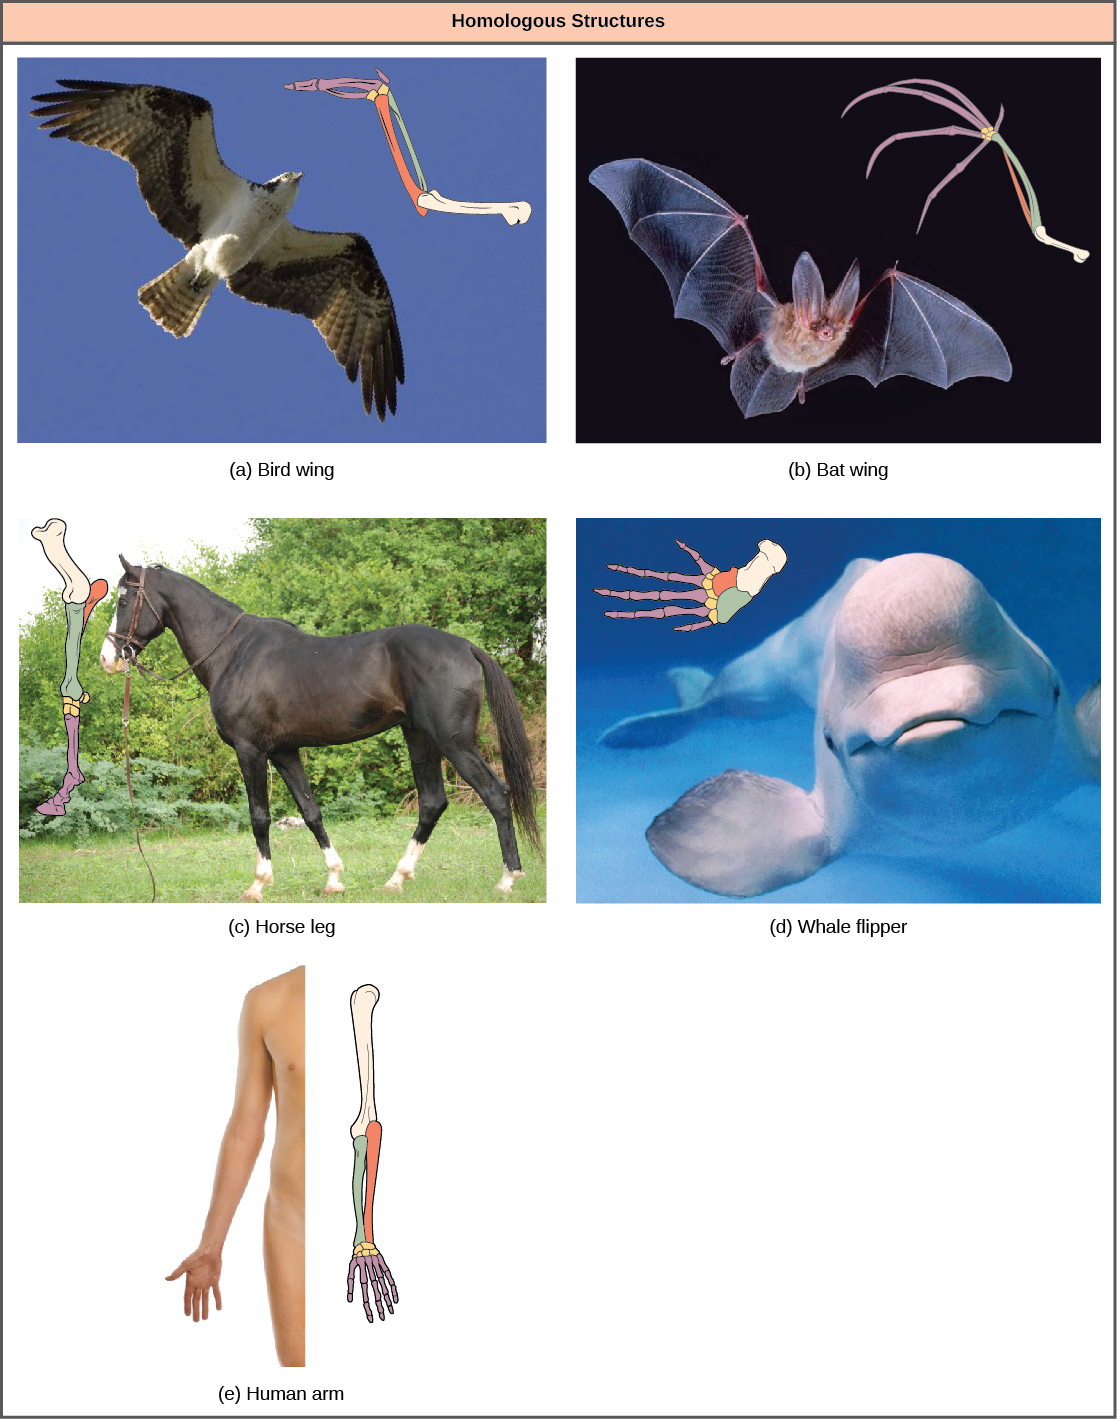 La foto A muestra un ave en vuelo, con un dibujo correspondiente de huesos de alas de pájaro. La foto B muestra un murciélago en vuelo con un dibujo correspondiente de huesos de ala de murciélago. La foto C muestra un caballo, con un dibujo correspondiente de huesos de patas delanteras. La foto D muestra una ballena beluga, con un dibujo correspondiente de huesos de aleta. La foto E muestra un brazo humano, con un dibujo correspondiente de los huesos del brazo. Todas las extremidades comparten huesos comunes, análogos a los huesos de los brazos y dedos de los humanos. Sin embargo, en el ala del murciélago, los huesos de los dedos son largos y separados y forman un andamio sobre el que se estira la membrana del ala. En el ala del pájaro, los huesos de los dedos se fusionan entre sí. En la pata de caballo, el cúbito se acorta y se fusiona al radio. Los huesos de la mano se reducen a un hueso largo y grueso y los huesos del dedo se reducen a un dedo largo y grueso con una uña o pezuña modificada. En la aleta de ballena, el húmero, el cúbito y el radio son muy cortos y gruesos.